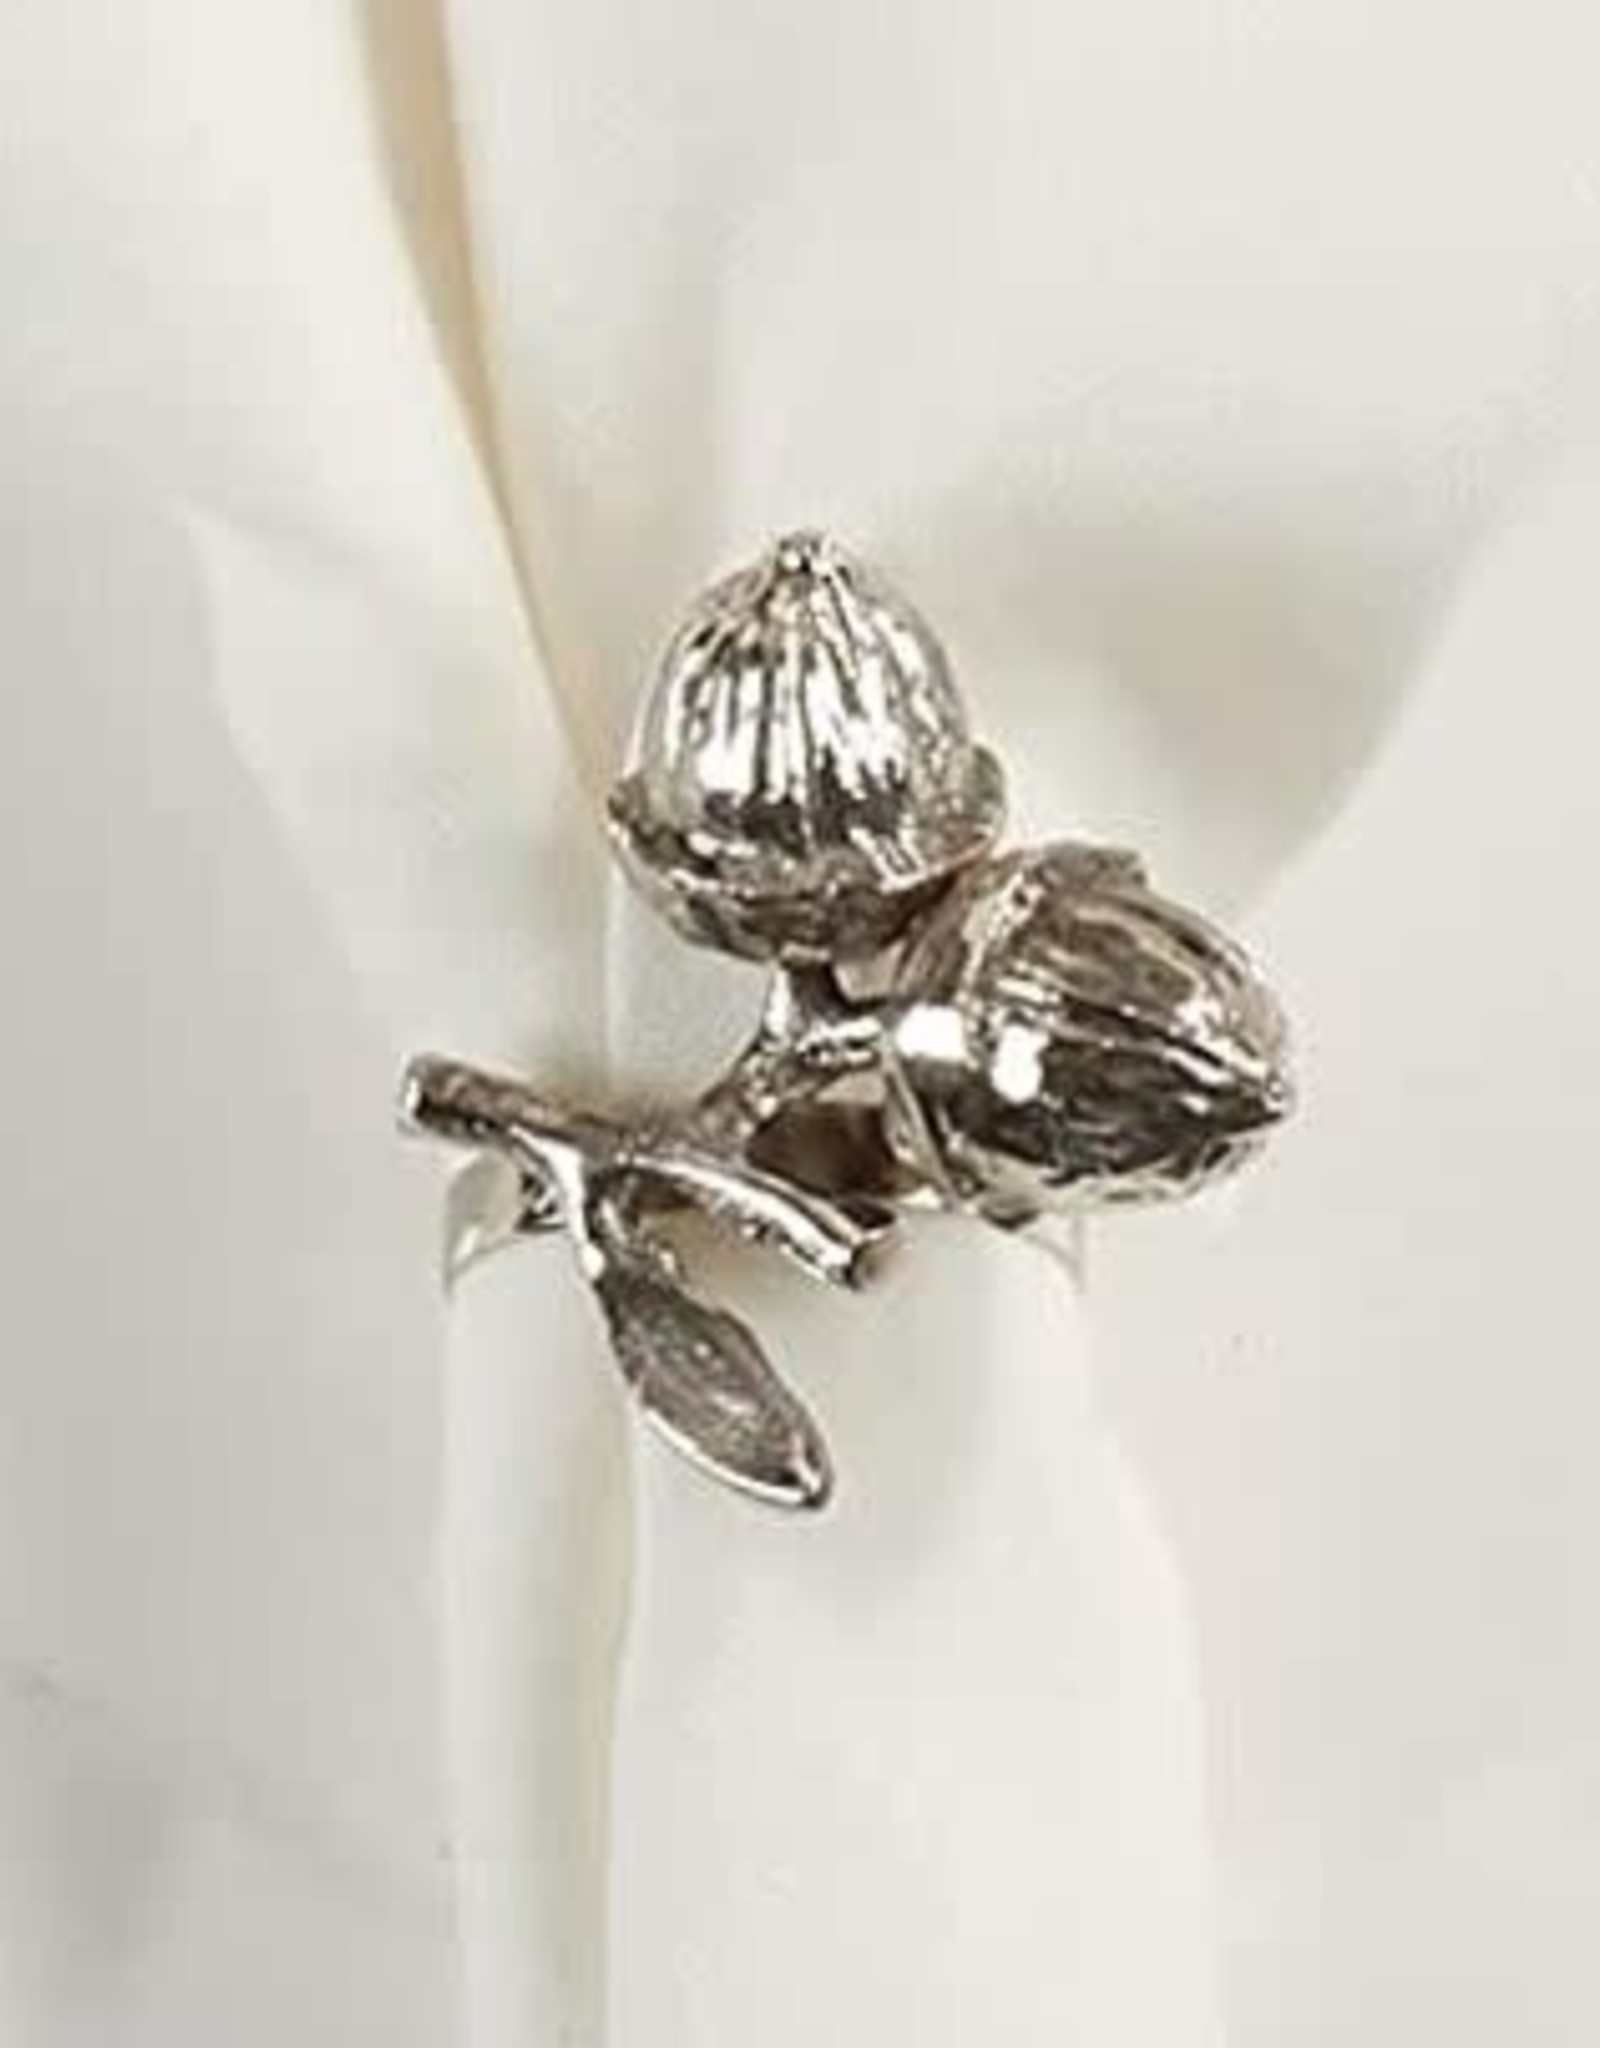 Acorn Napkin Ring - Silver